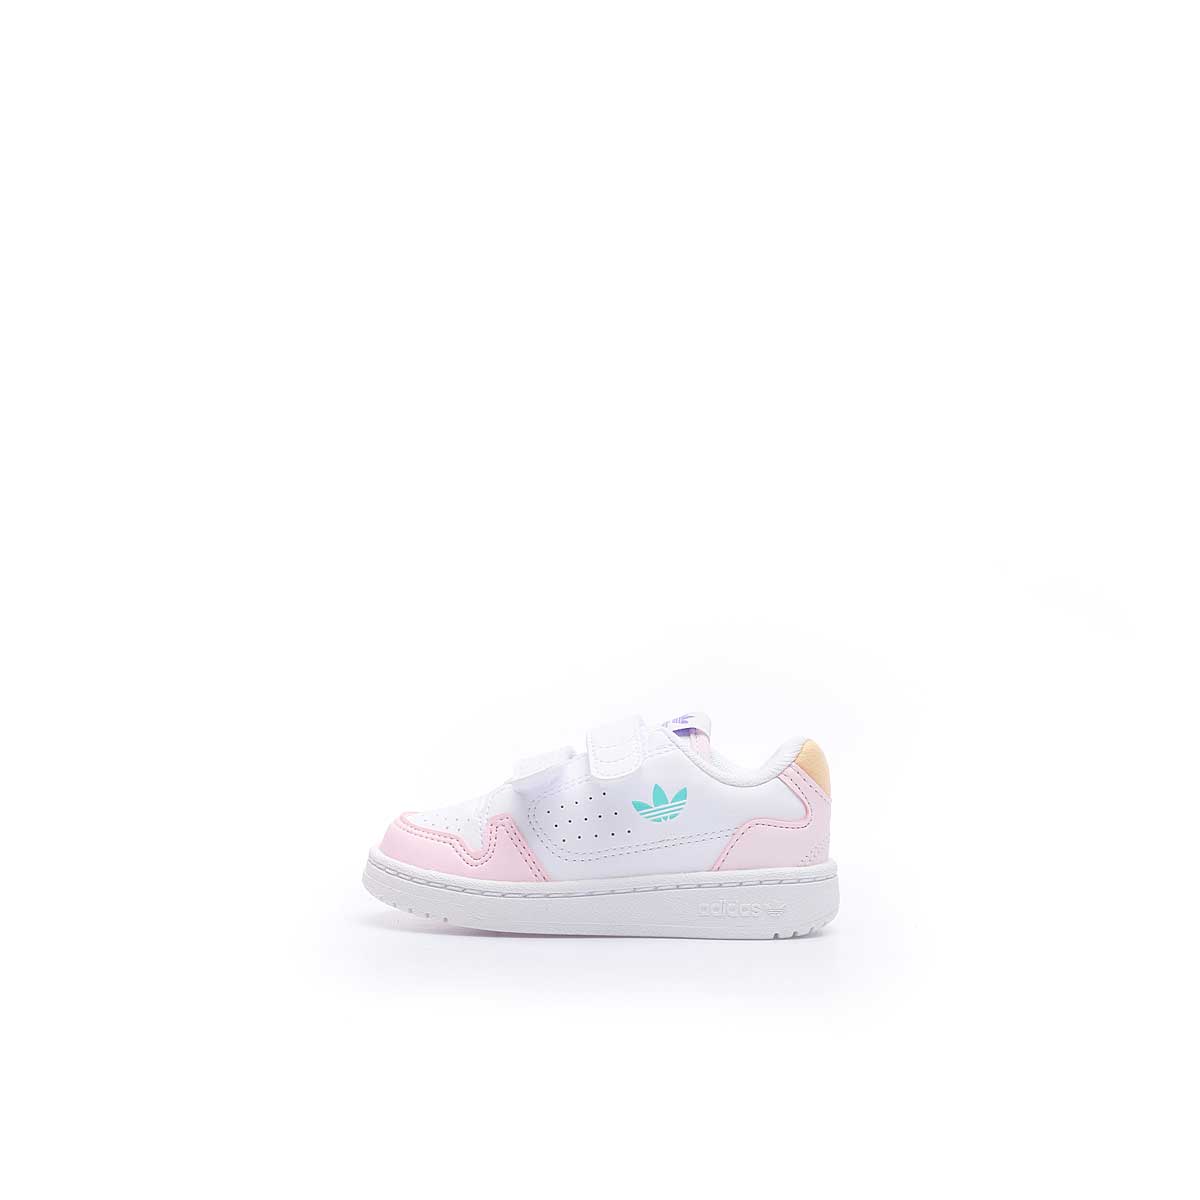 Adidas Originals Ny 90 Cf I Toddler, Ftwwht/Lpurpl/Clpink